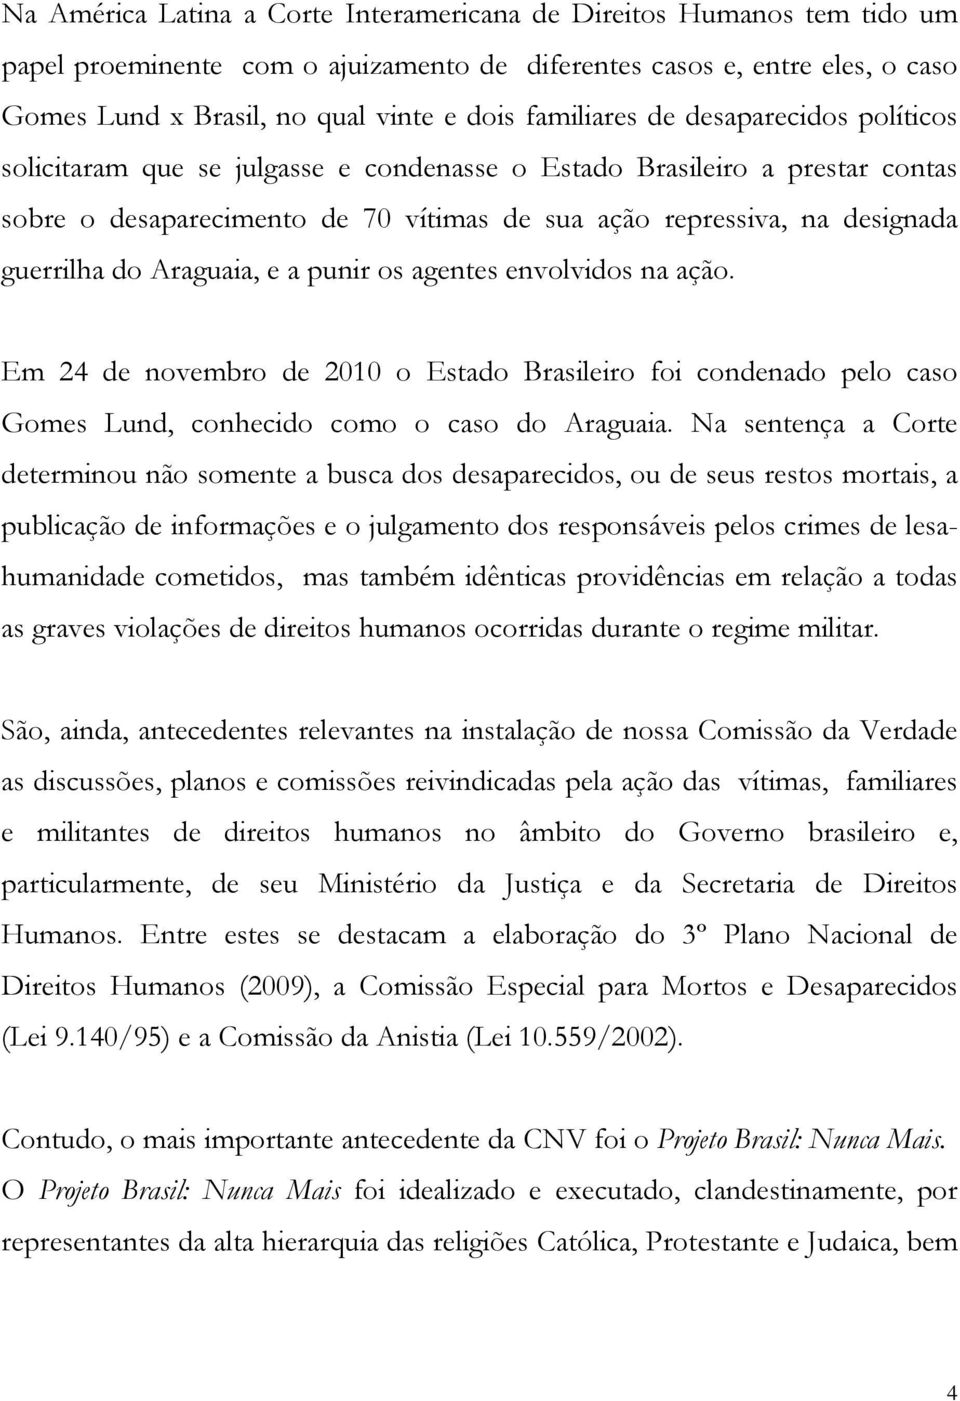 guerrilha do Araguaia, e a punir os agentes envolvidos na ação. Em 24 de novembro de 2010 o Estado Brasileiro foi condenado pelo caso Gomes Lund, conhecido como o caso do Araguaia.